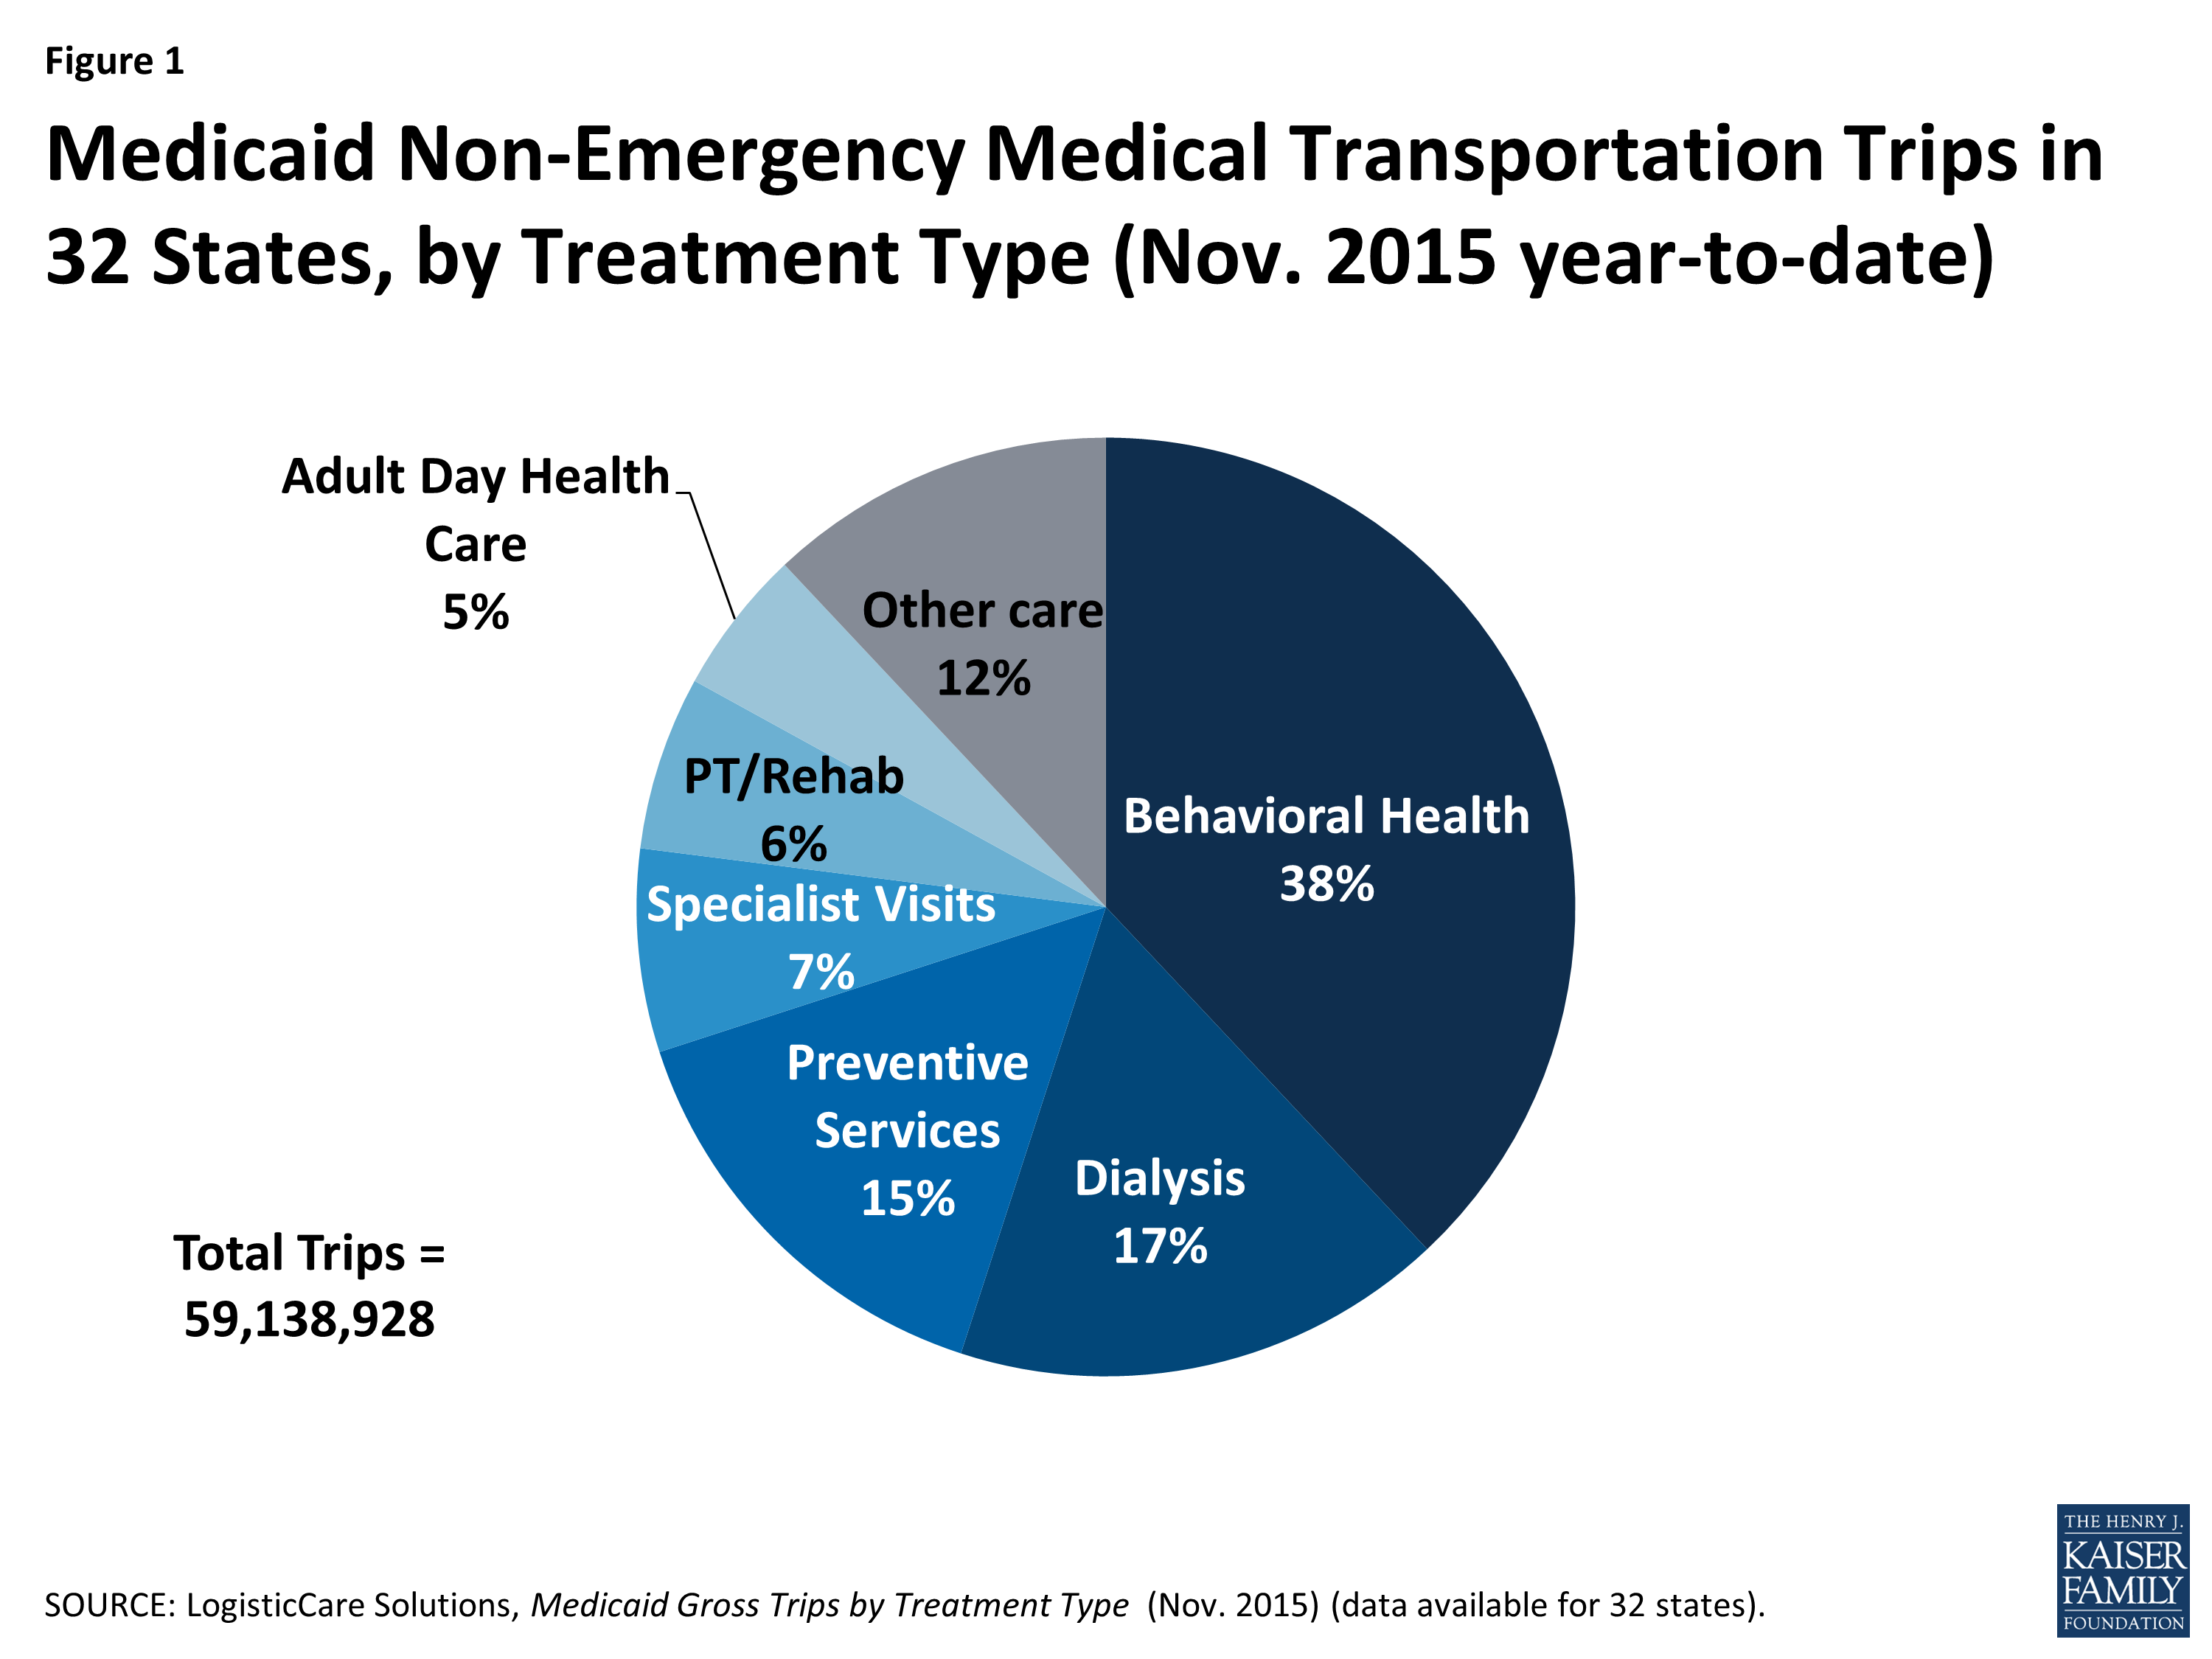 Kuva 1: Medicaid ei-Hätäkuljetusmatkat 32 osavaltiossa hoitotyypin mukaan (Nov. 2015 year-to-date)